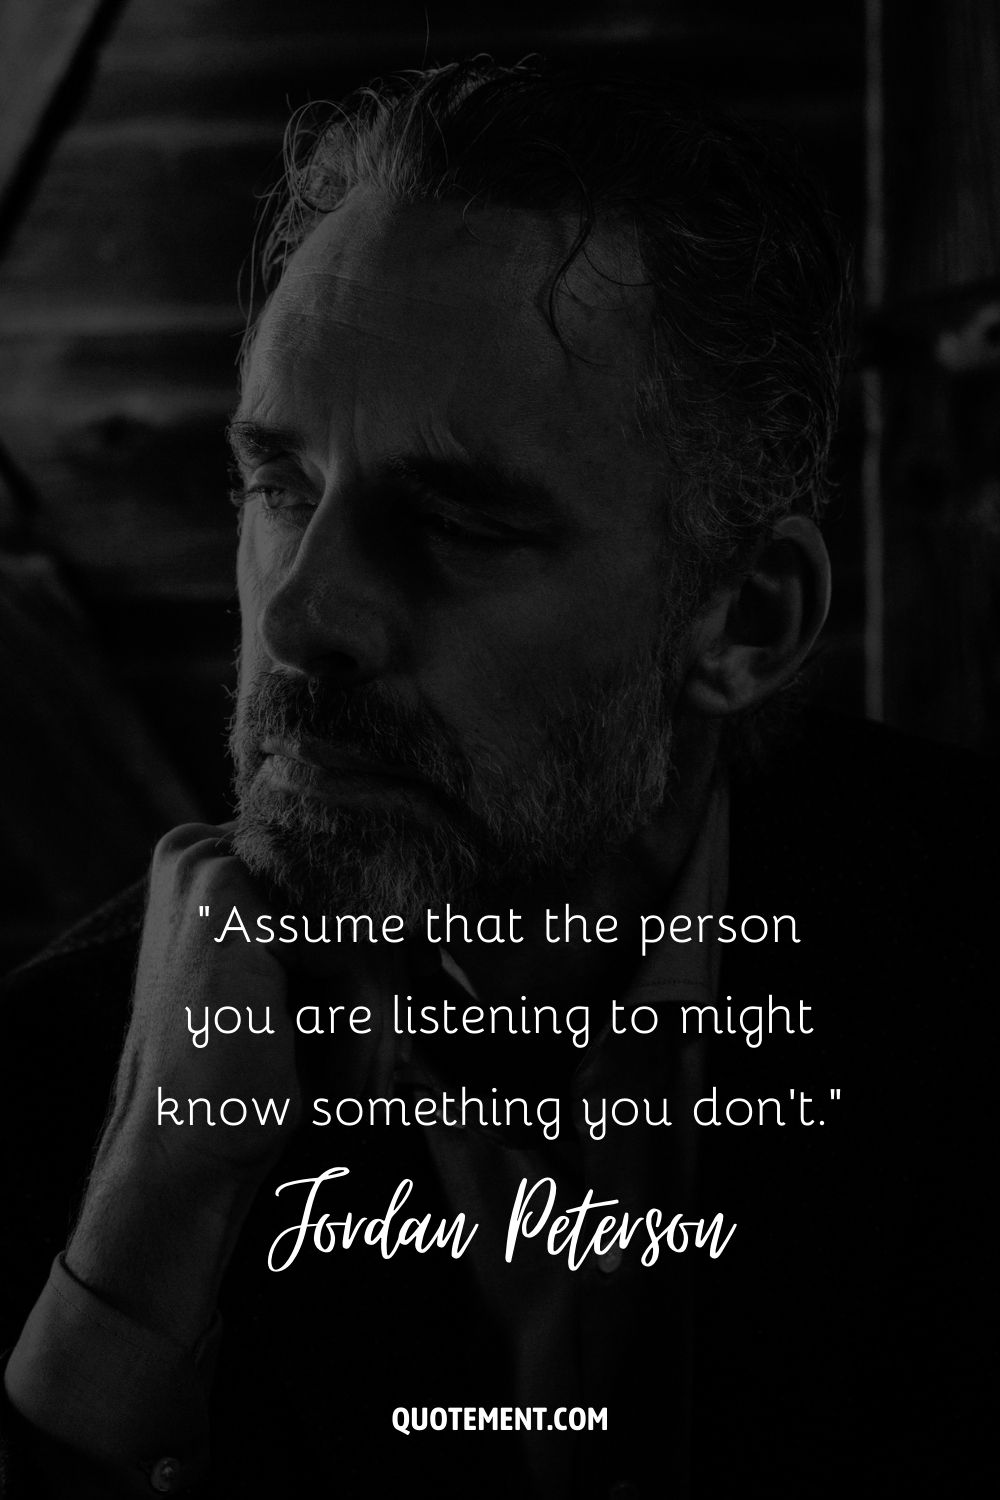 Cita de Jordan Peterson sobre escuchar a la gente.